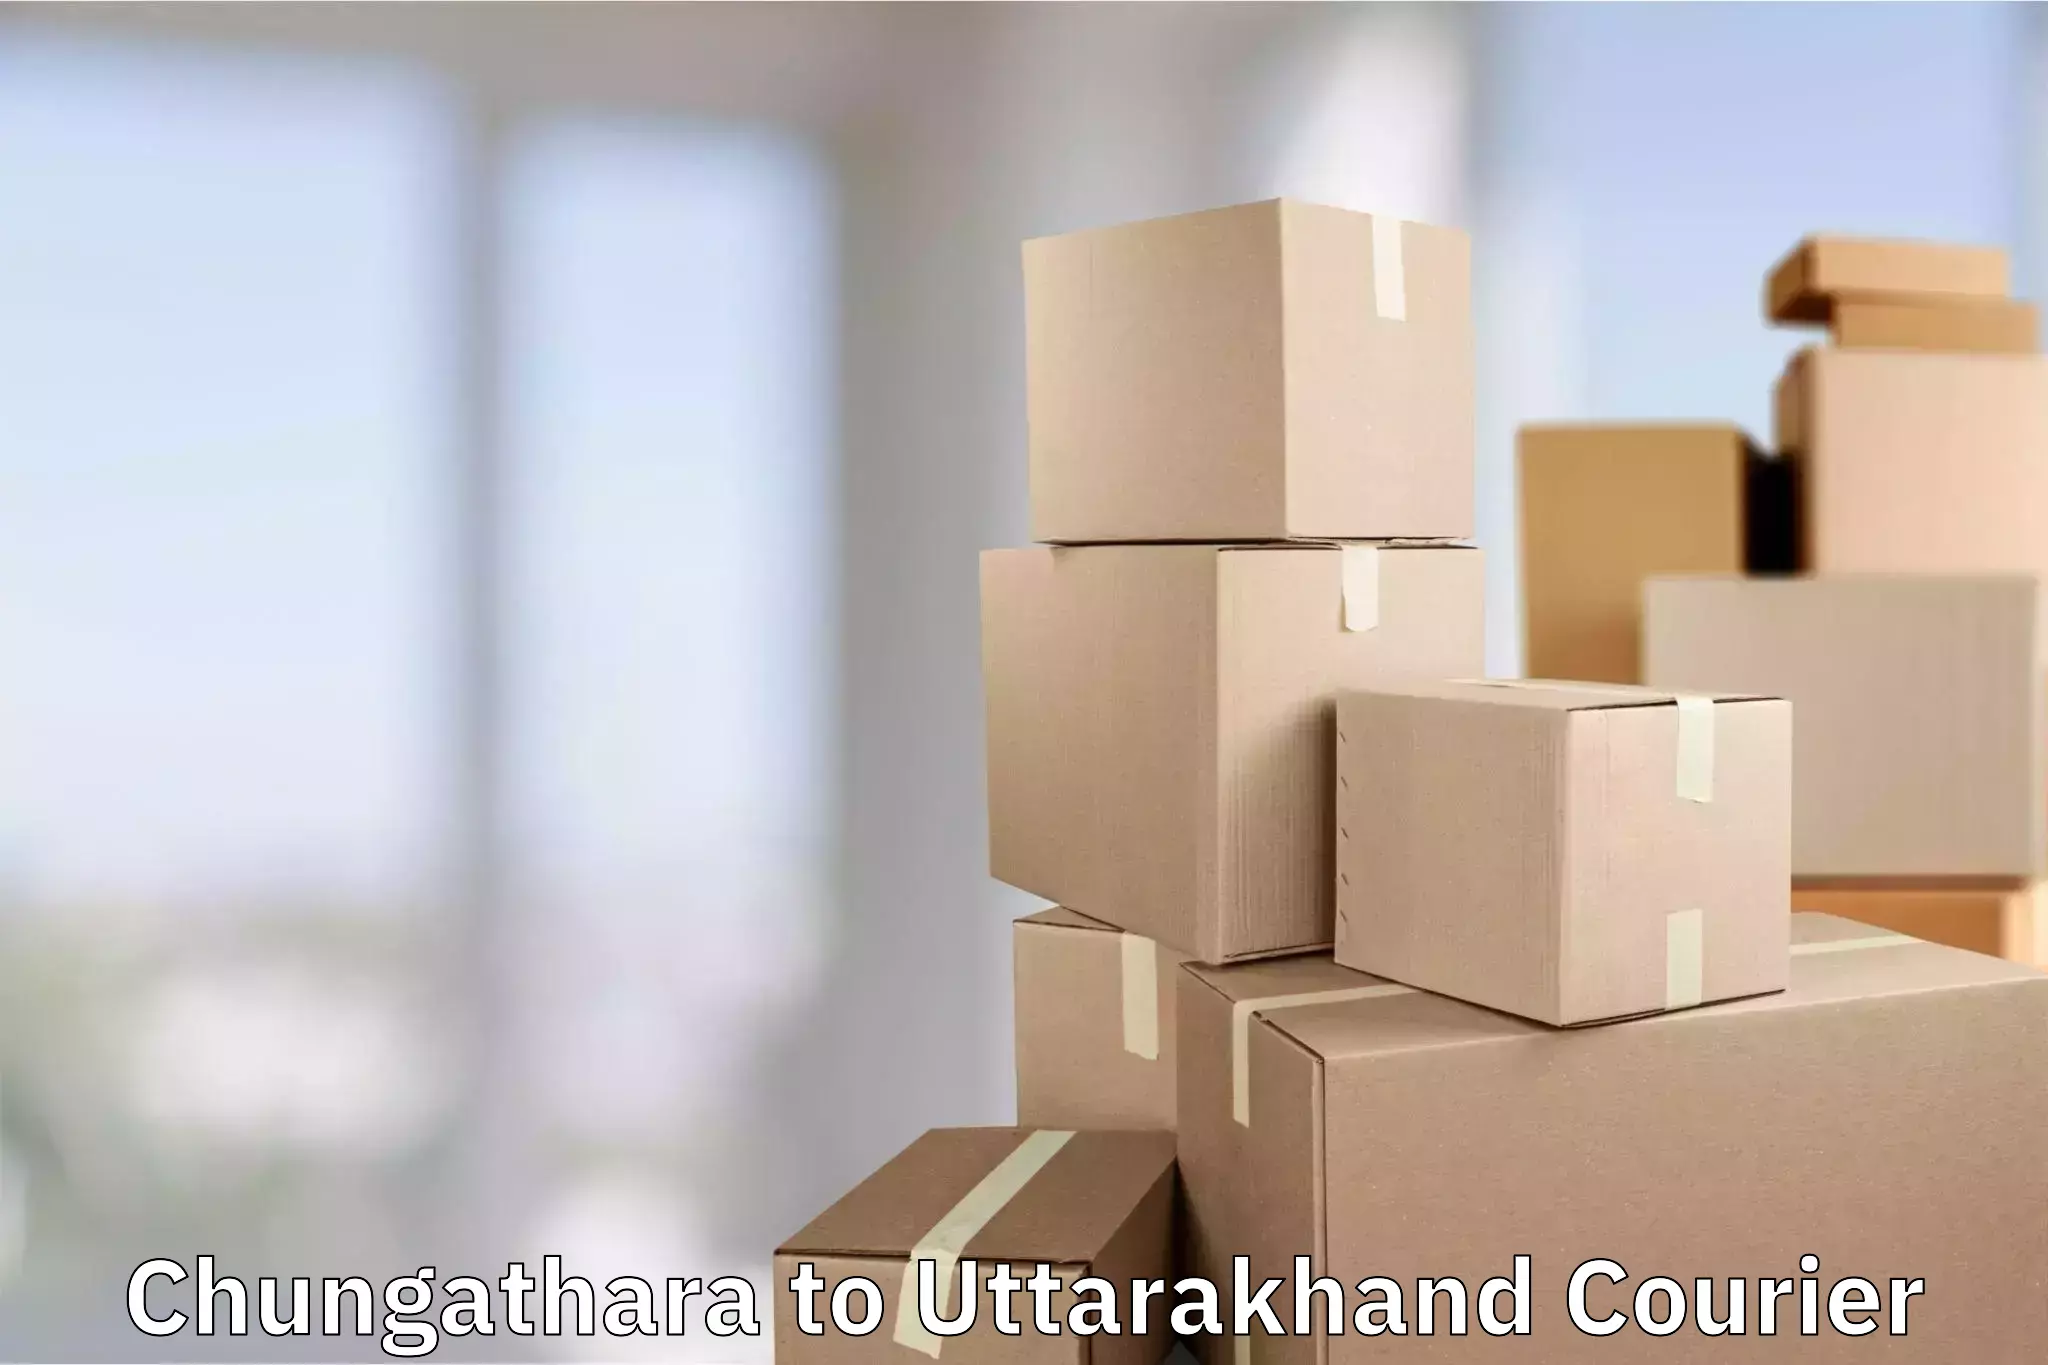 Professional baggage transport Chungathara to Uttarakhand